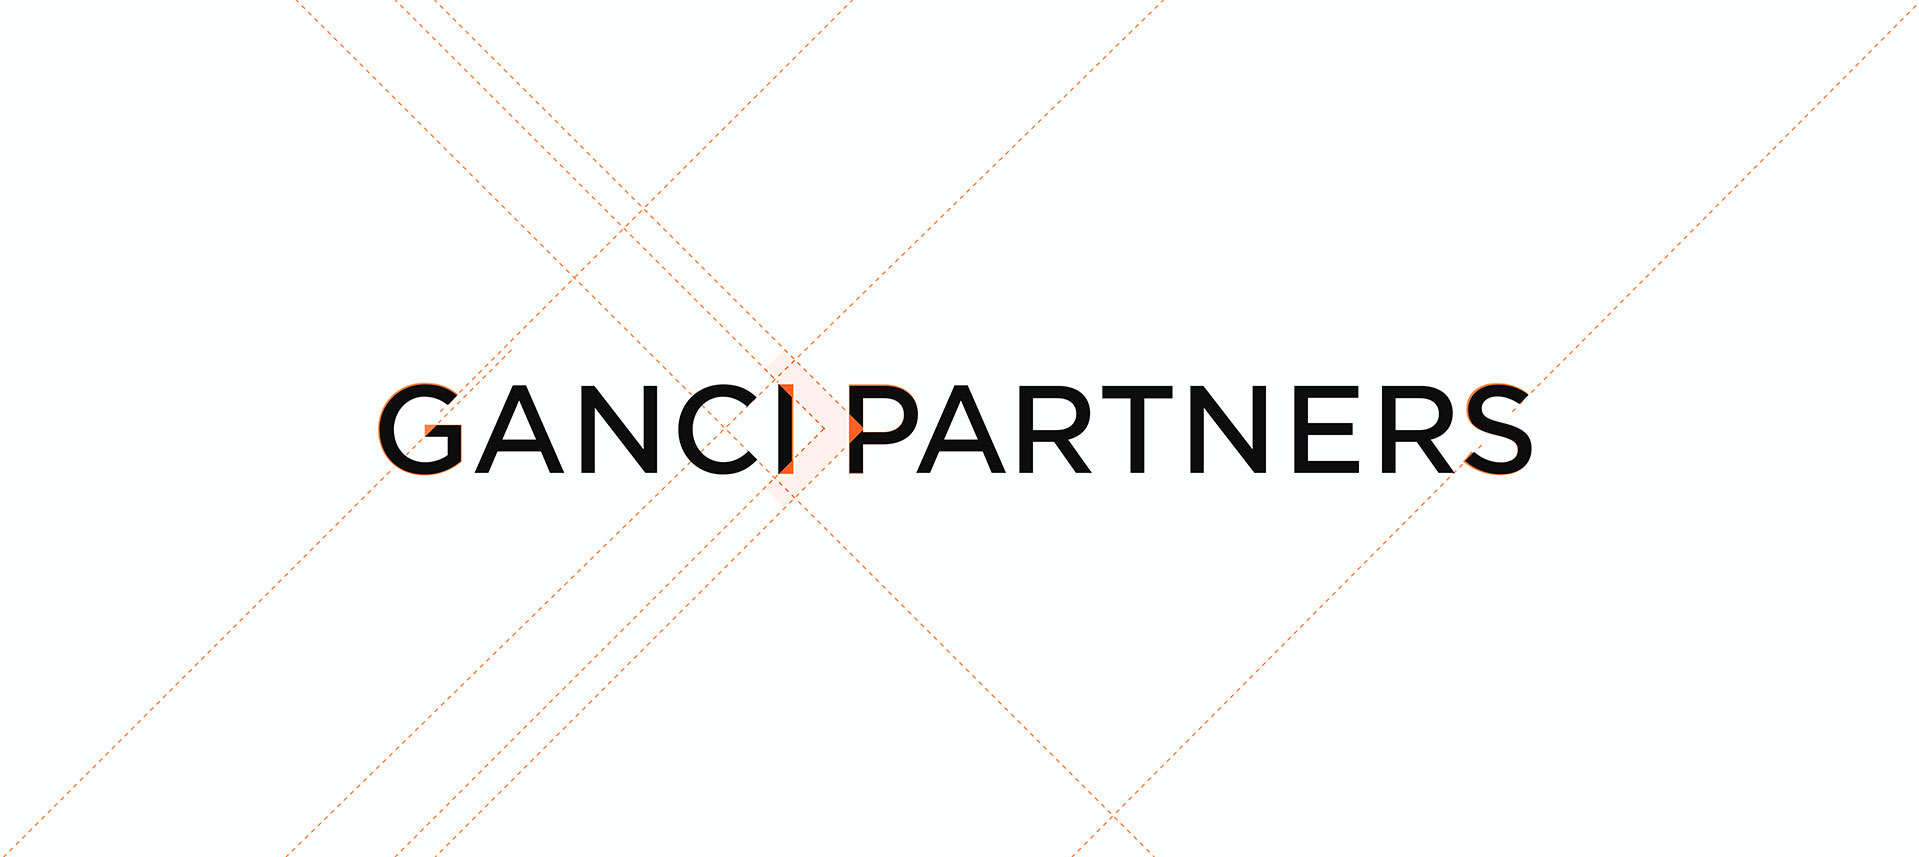 BENBEN creation Logotype identite visuelle Ganci Partners